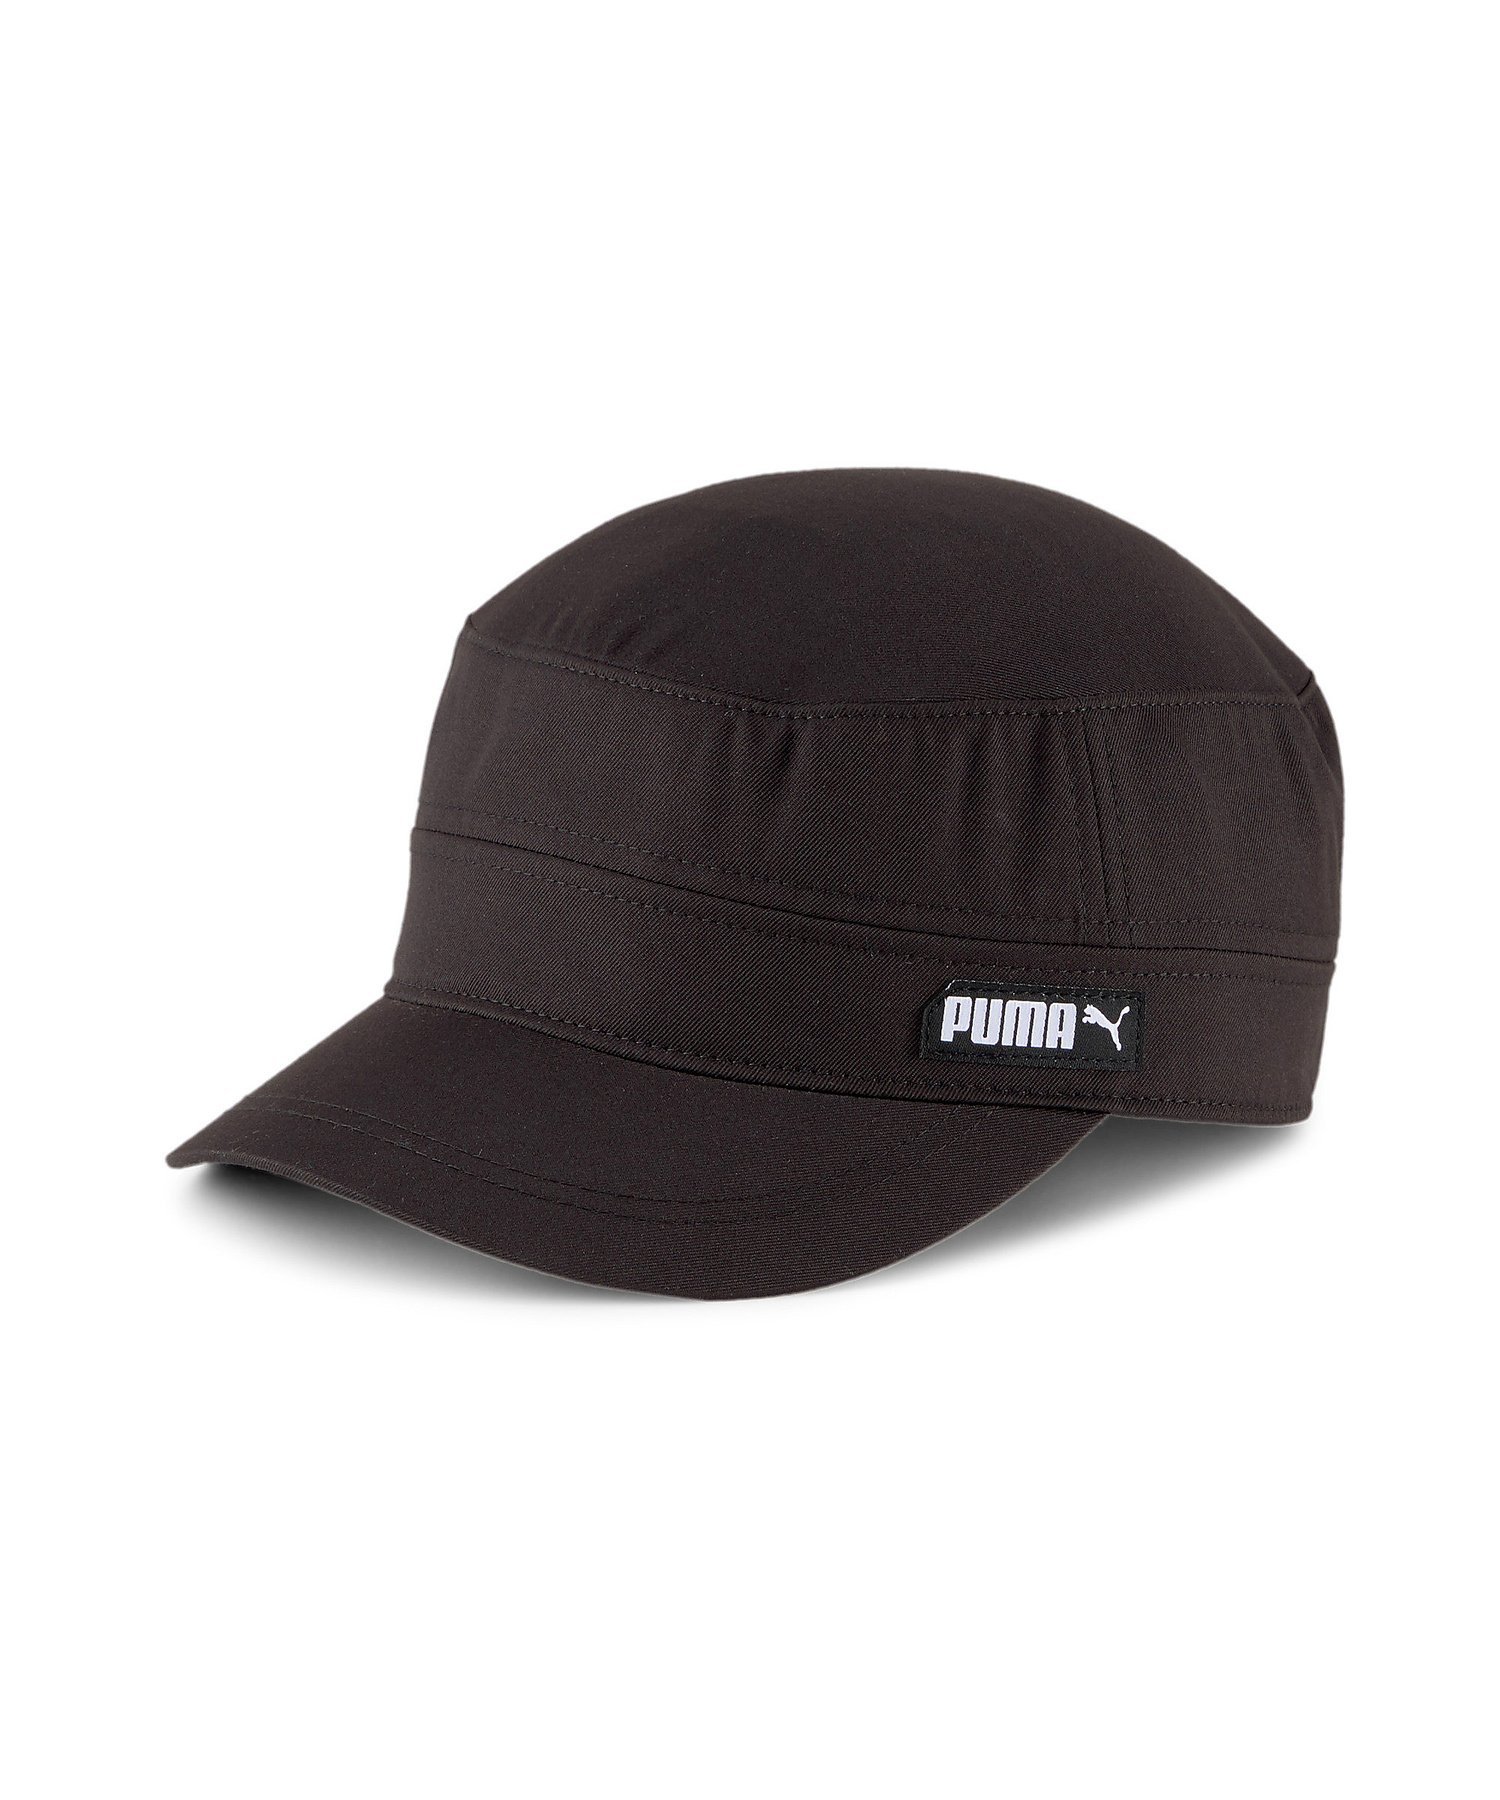 PUMA プーマ ミリタリー キャップ ユニセックス プーマ 帽子/ヘア小物 キャップ ブラック